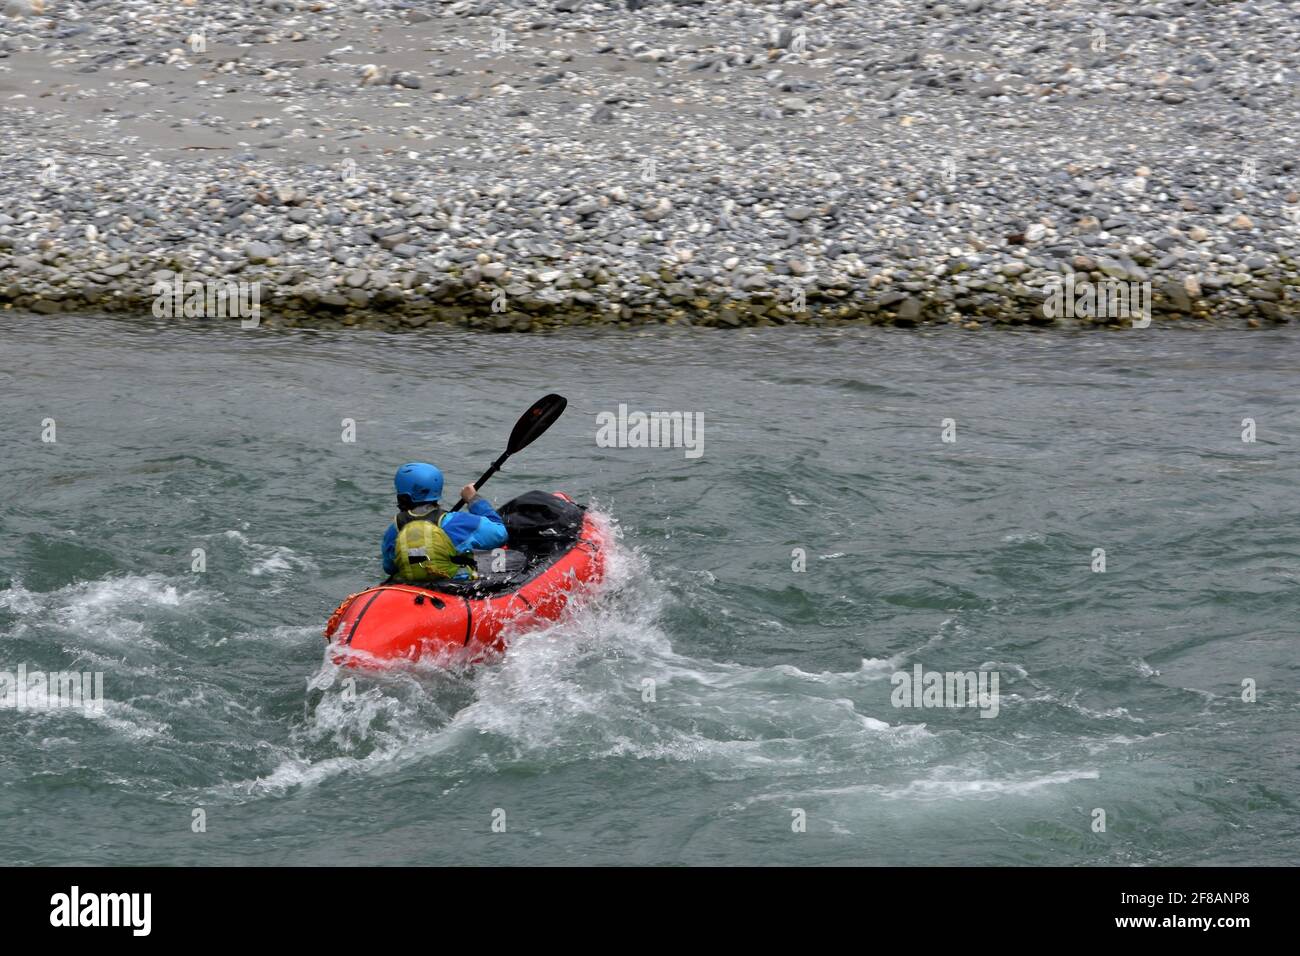 Kayakiste sur l'eau vive dans la gorge du Rhin Ruinaulta en Suisse. Il est en arrière vue manœuvrant avec des oars pour garder le parcours et éviter la rive. Banque D'Images